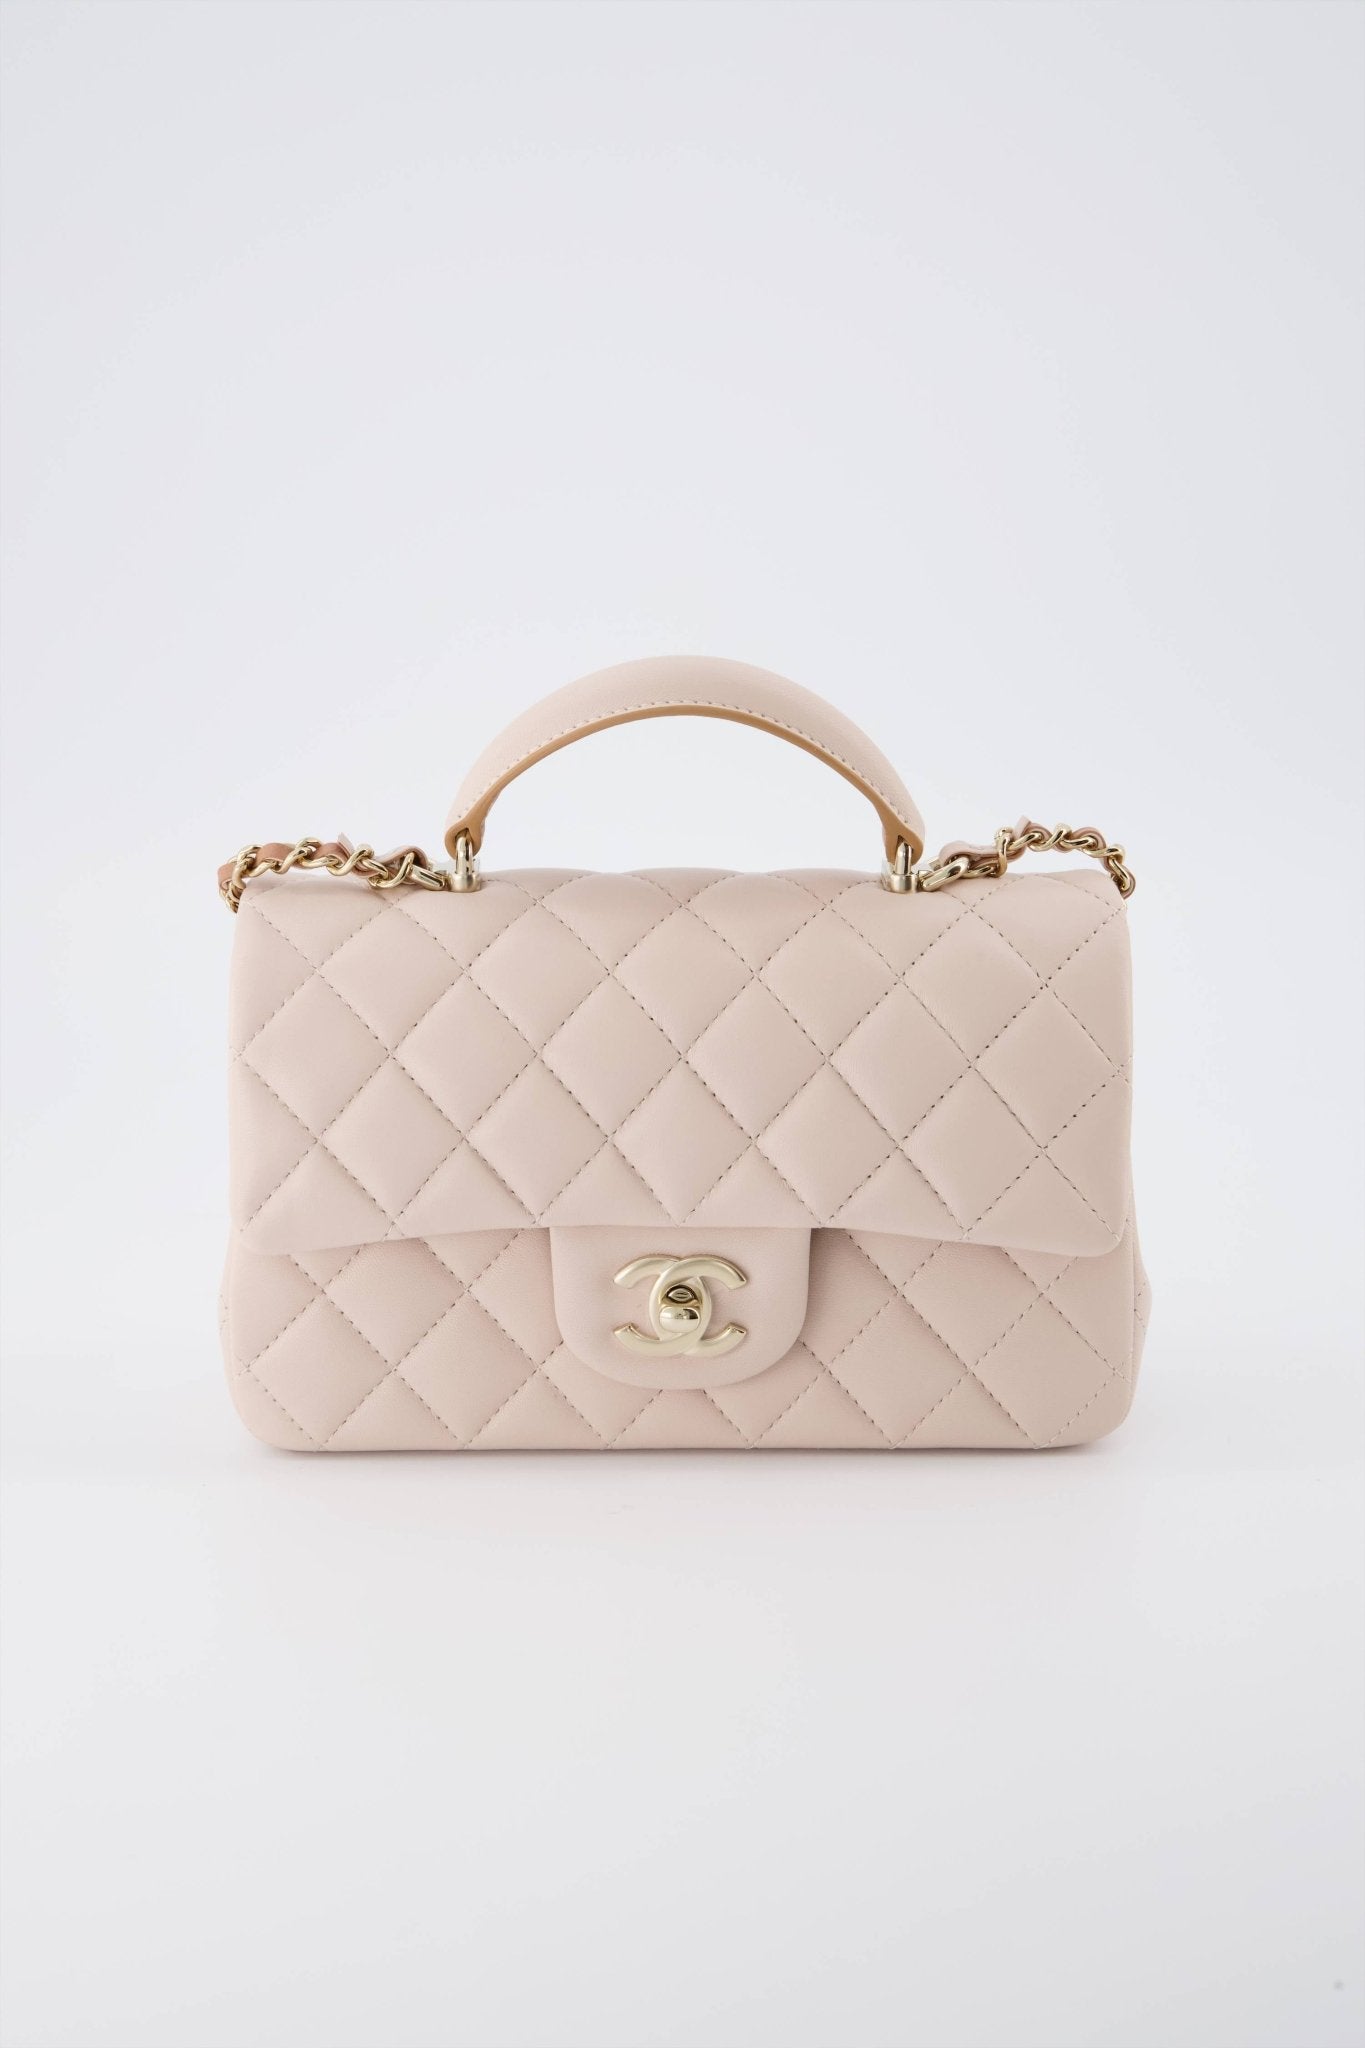 CHANEL, Bags, Small Chanel Handbag